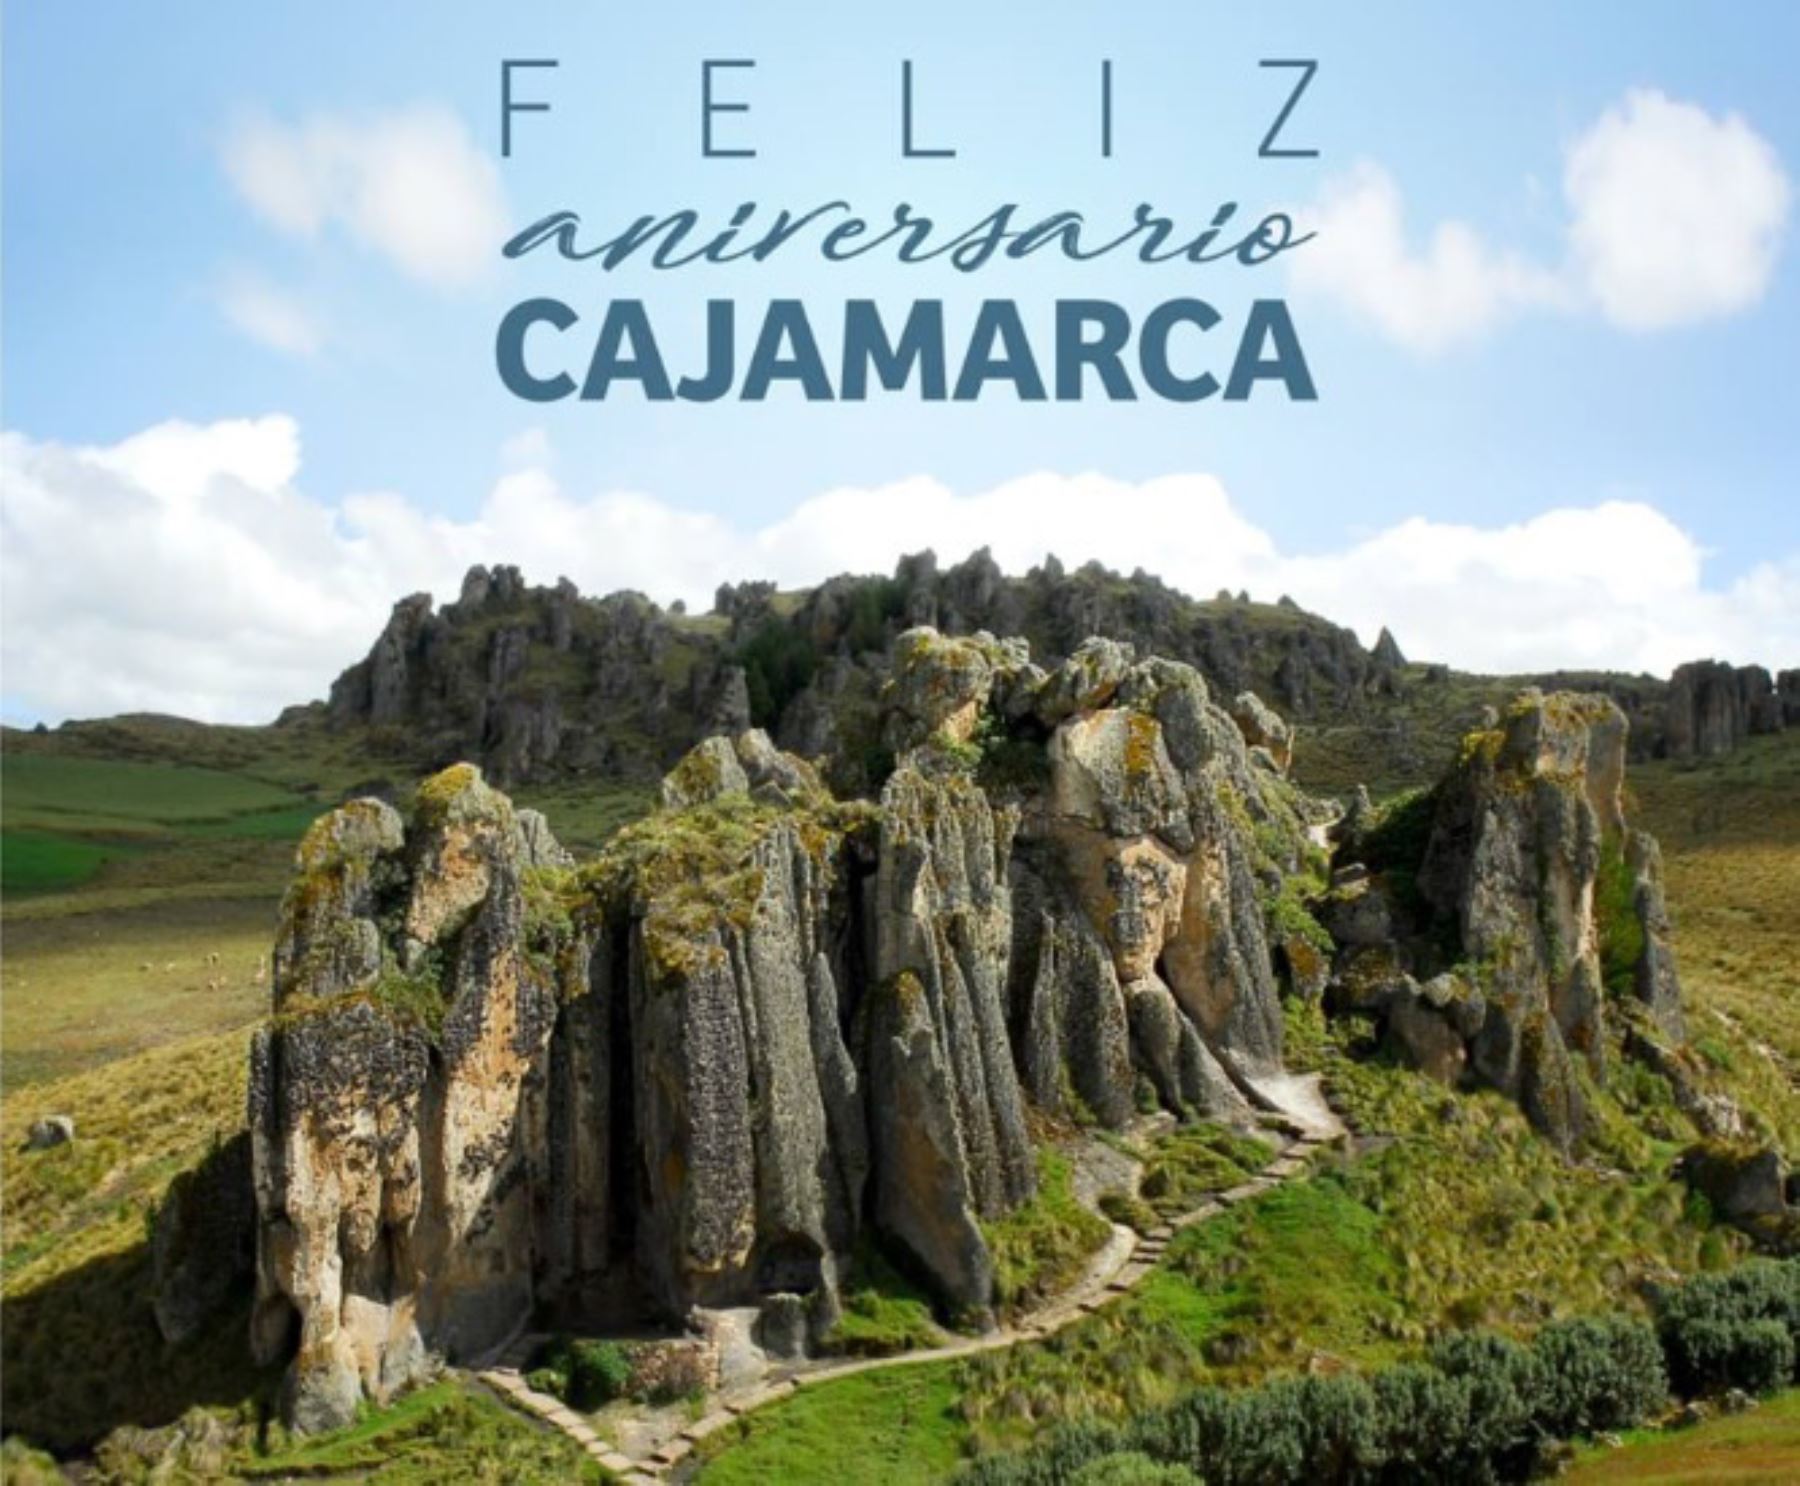 Cajamarca celebra el 166 aniversario de su reconocimiento como capital departamental. El complejo de piedras gigantes de Cumbemayo es uno de sus principales atractivos turísticos. Foto: ANDINA/difusión.